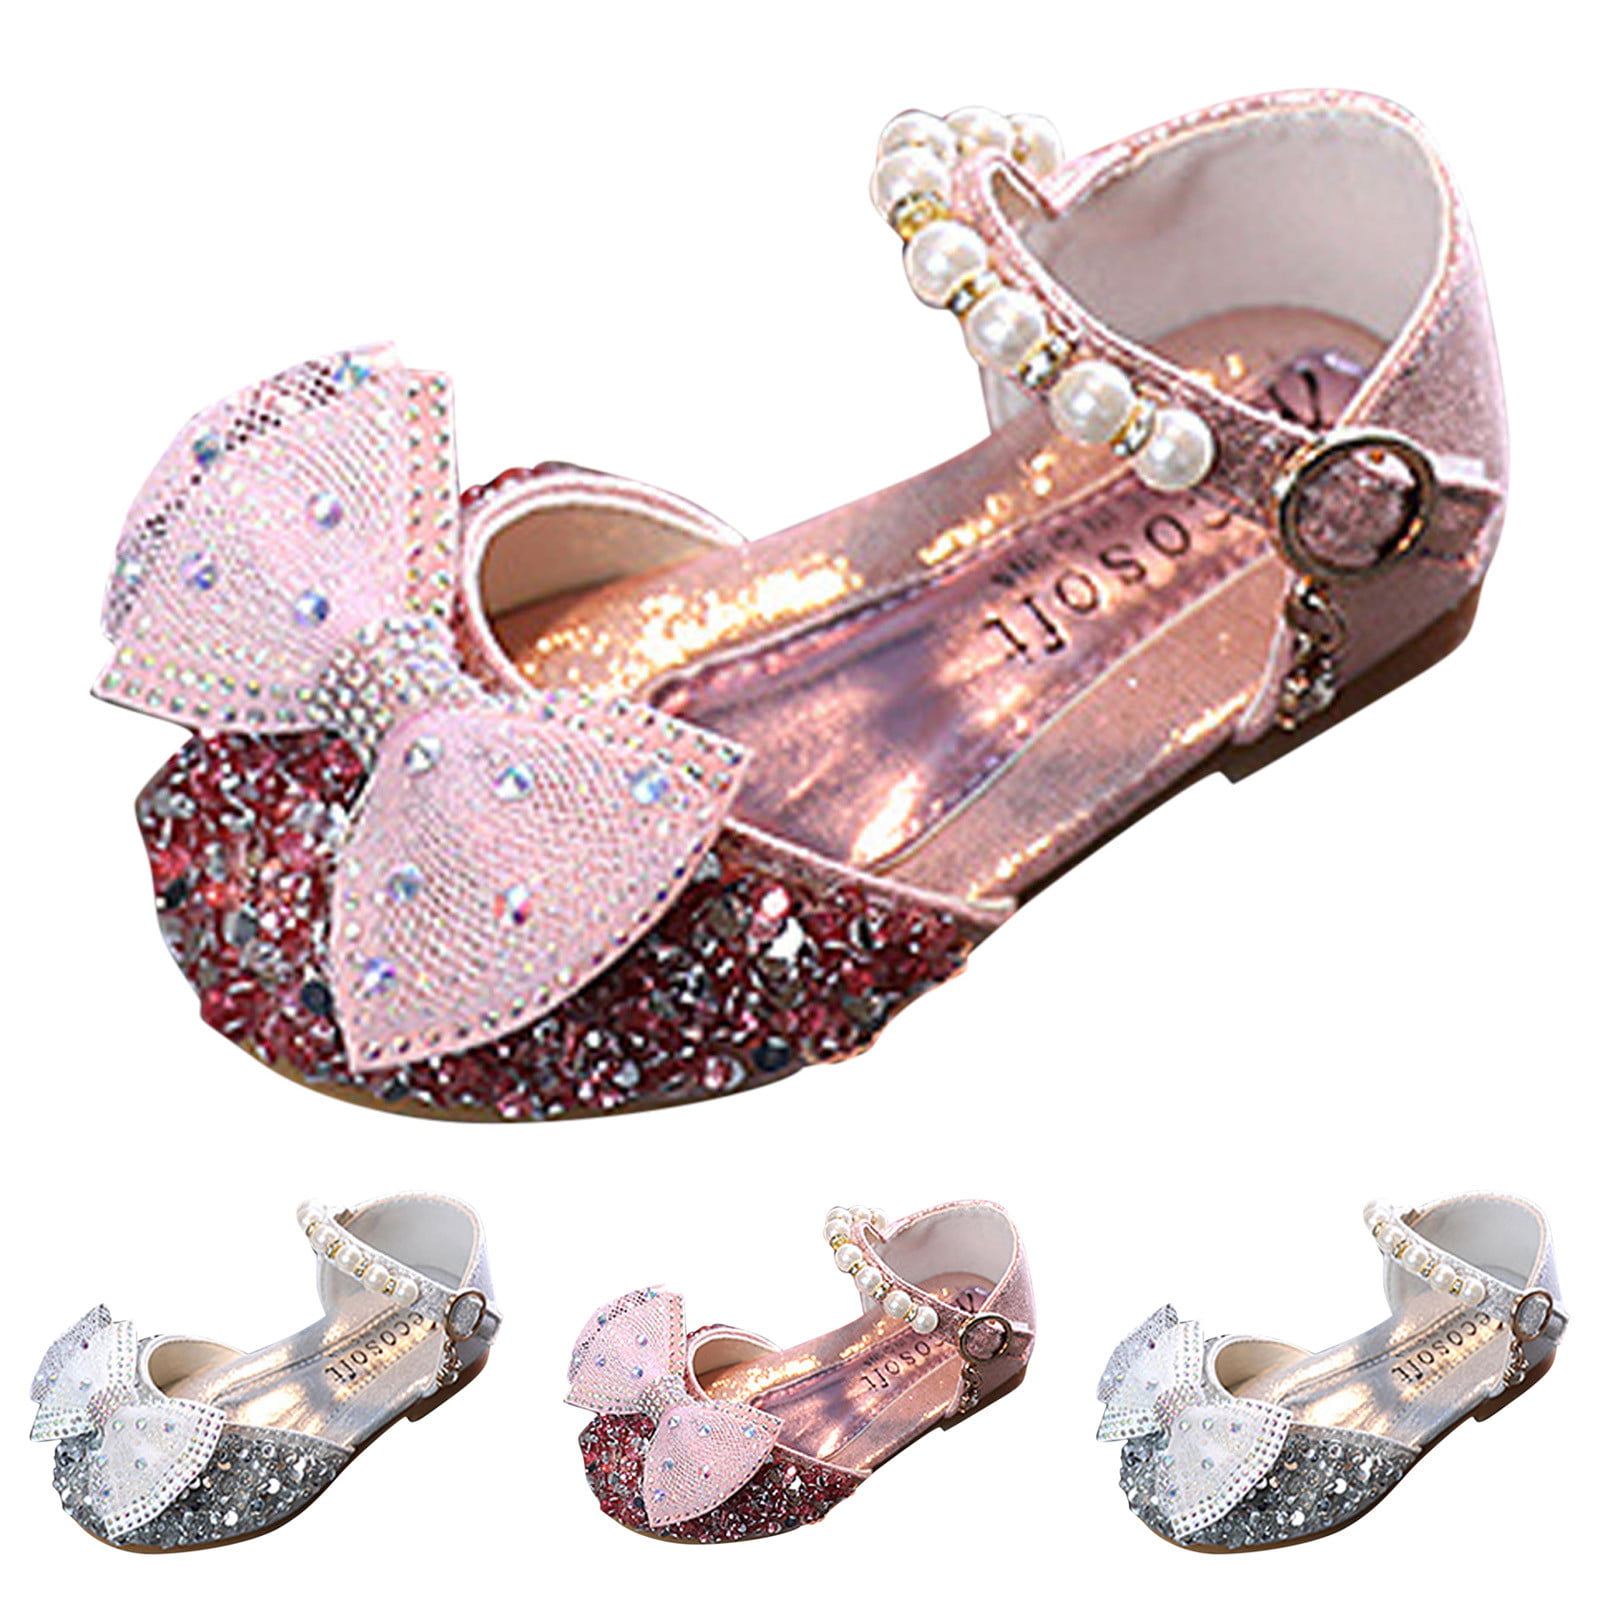 Wholesale Children's girls fancy slippers In Appealing Designs